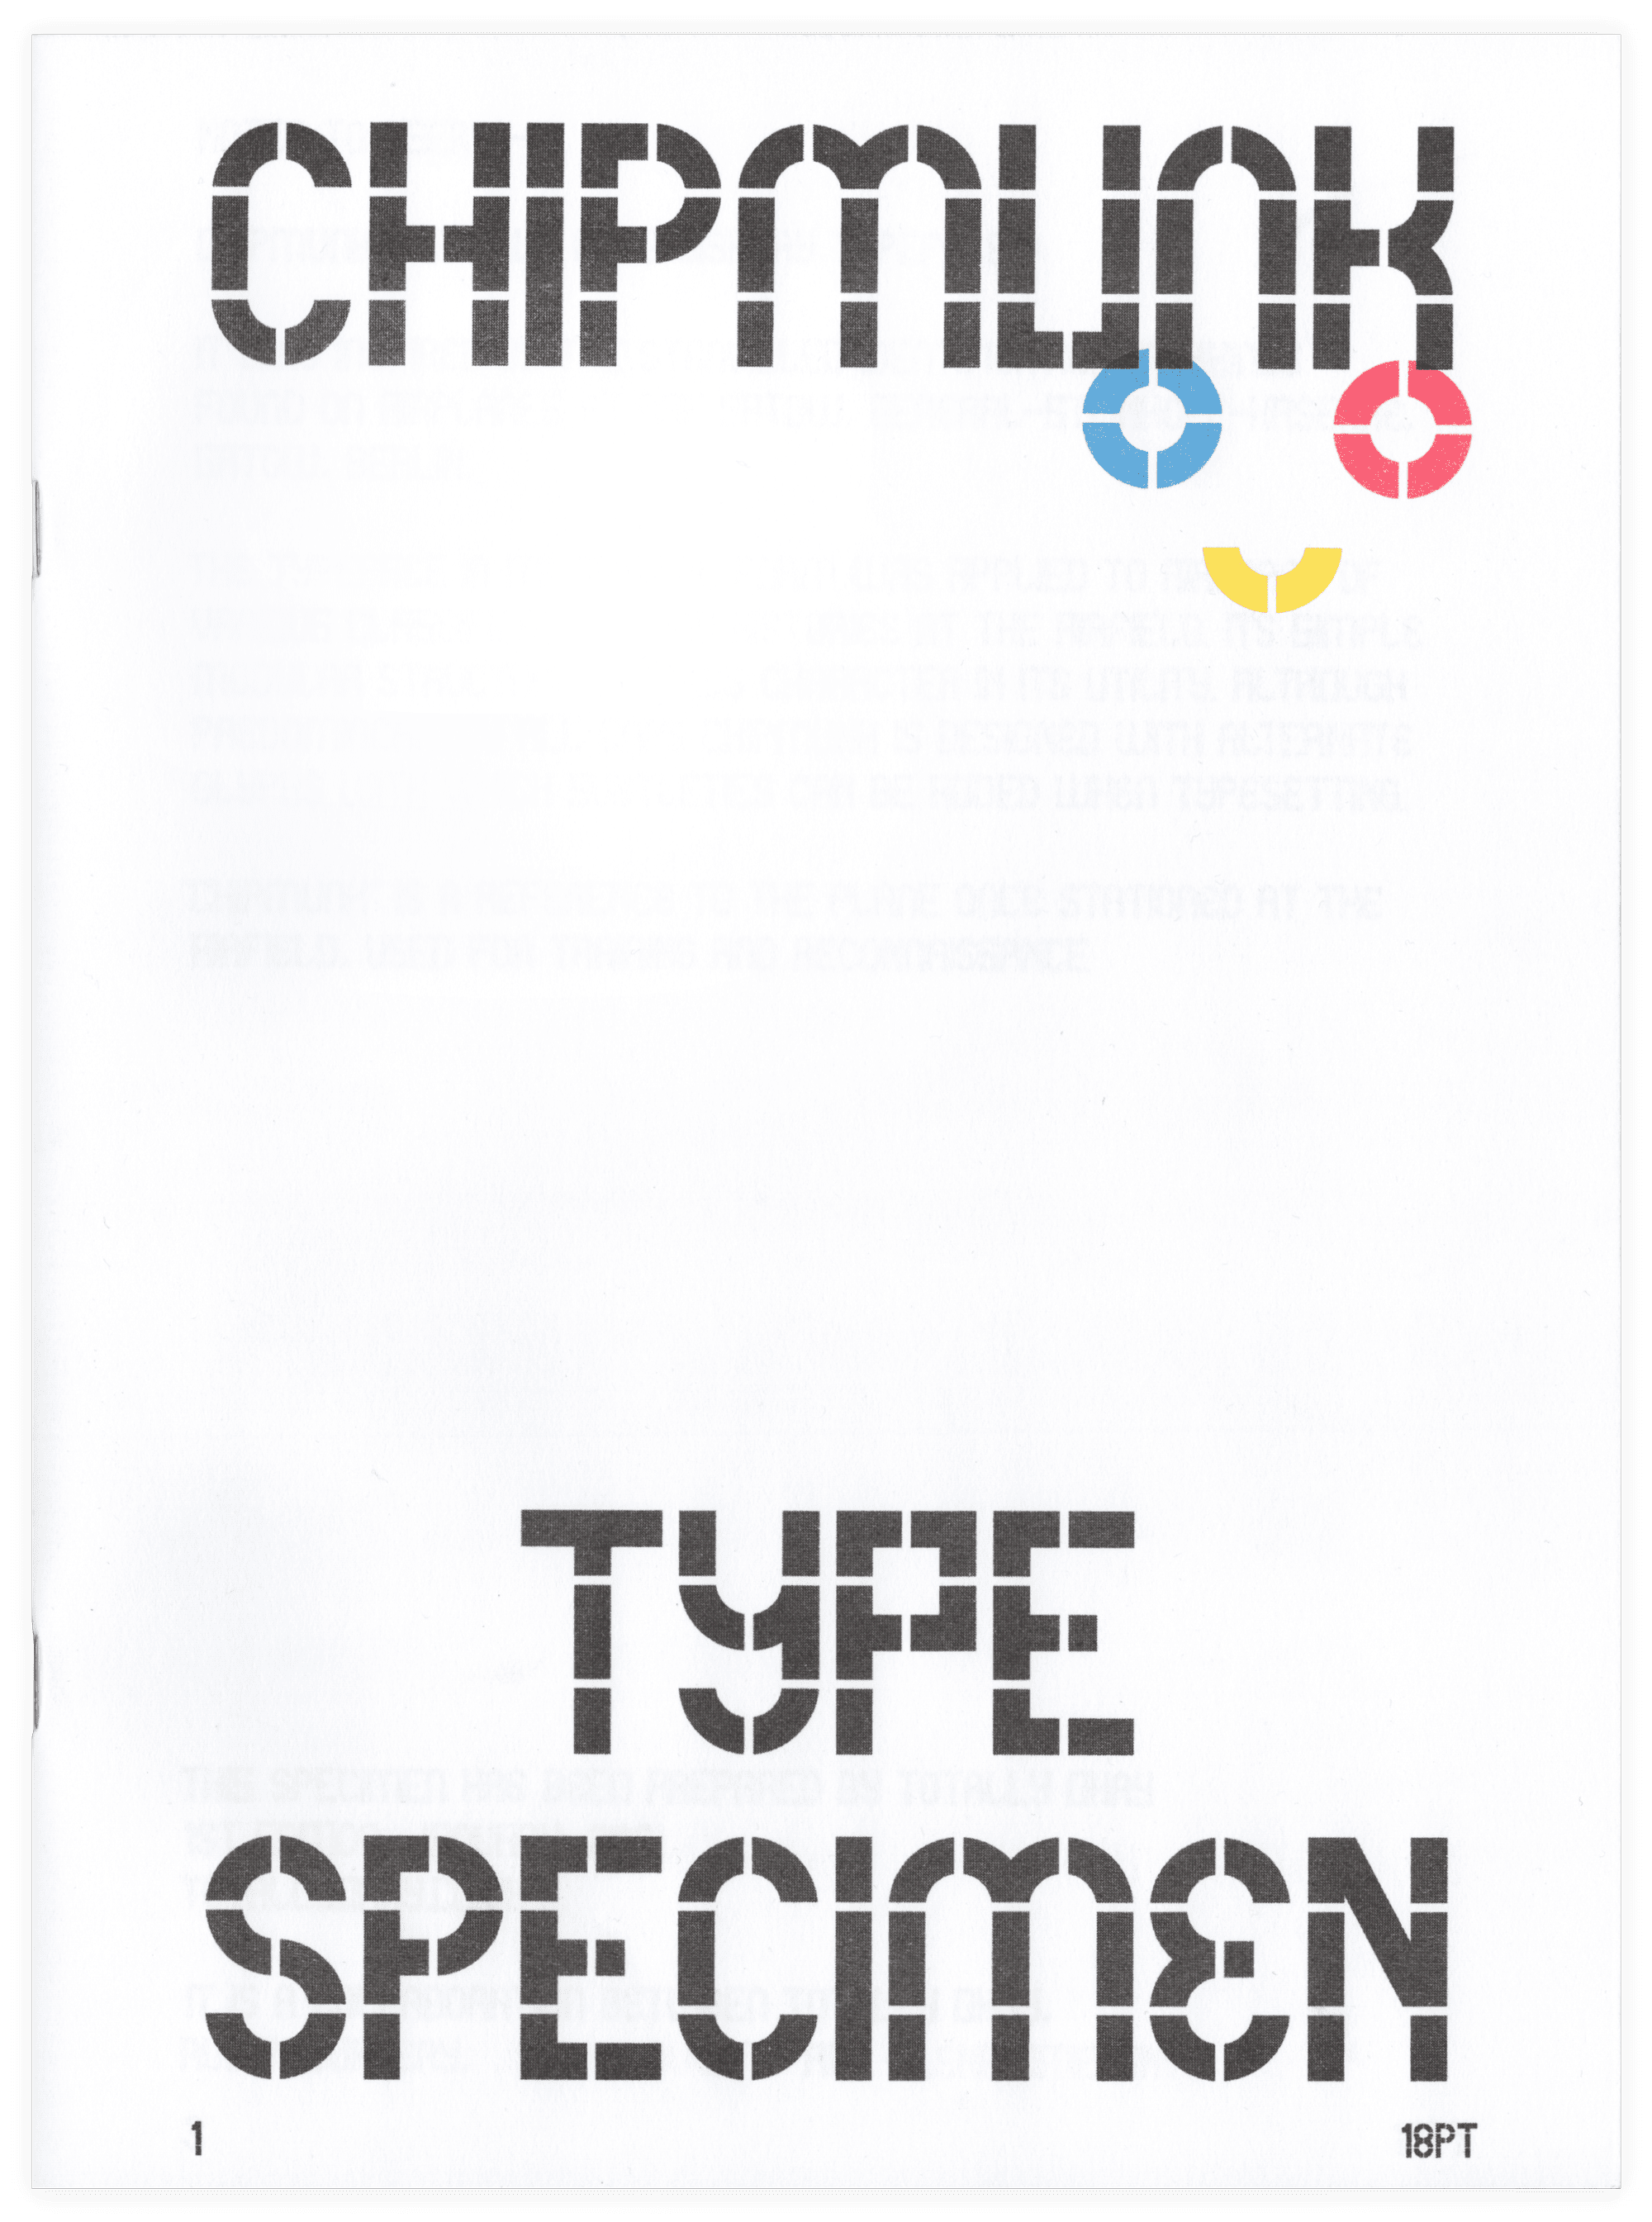 Chimpunk Typeface specimen cover